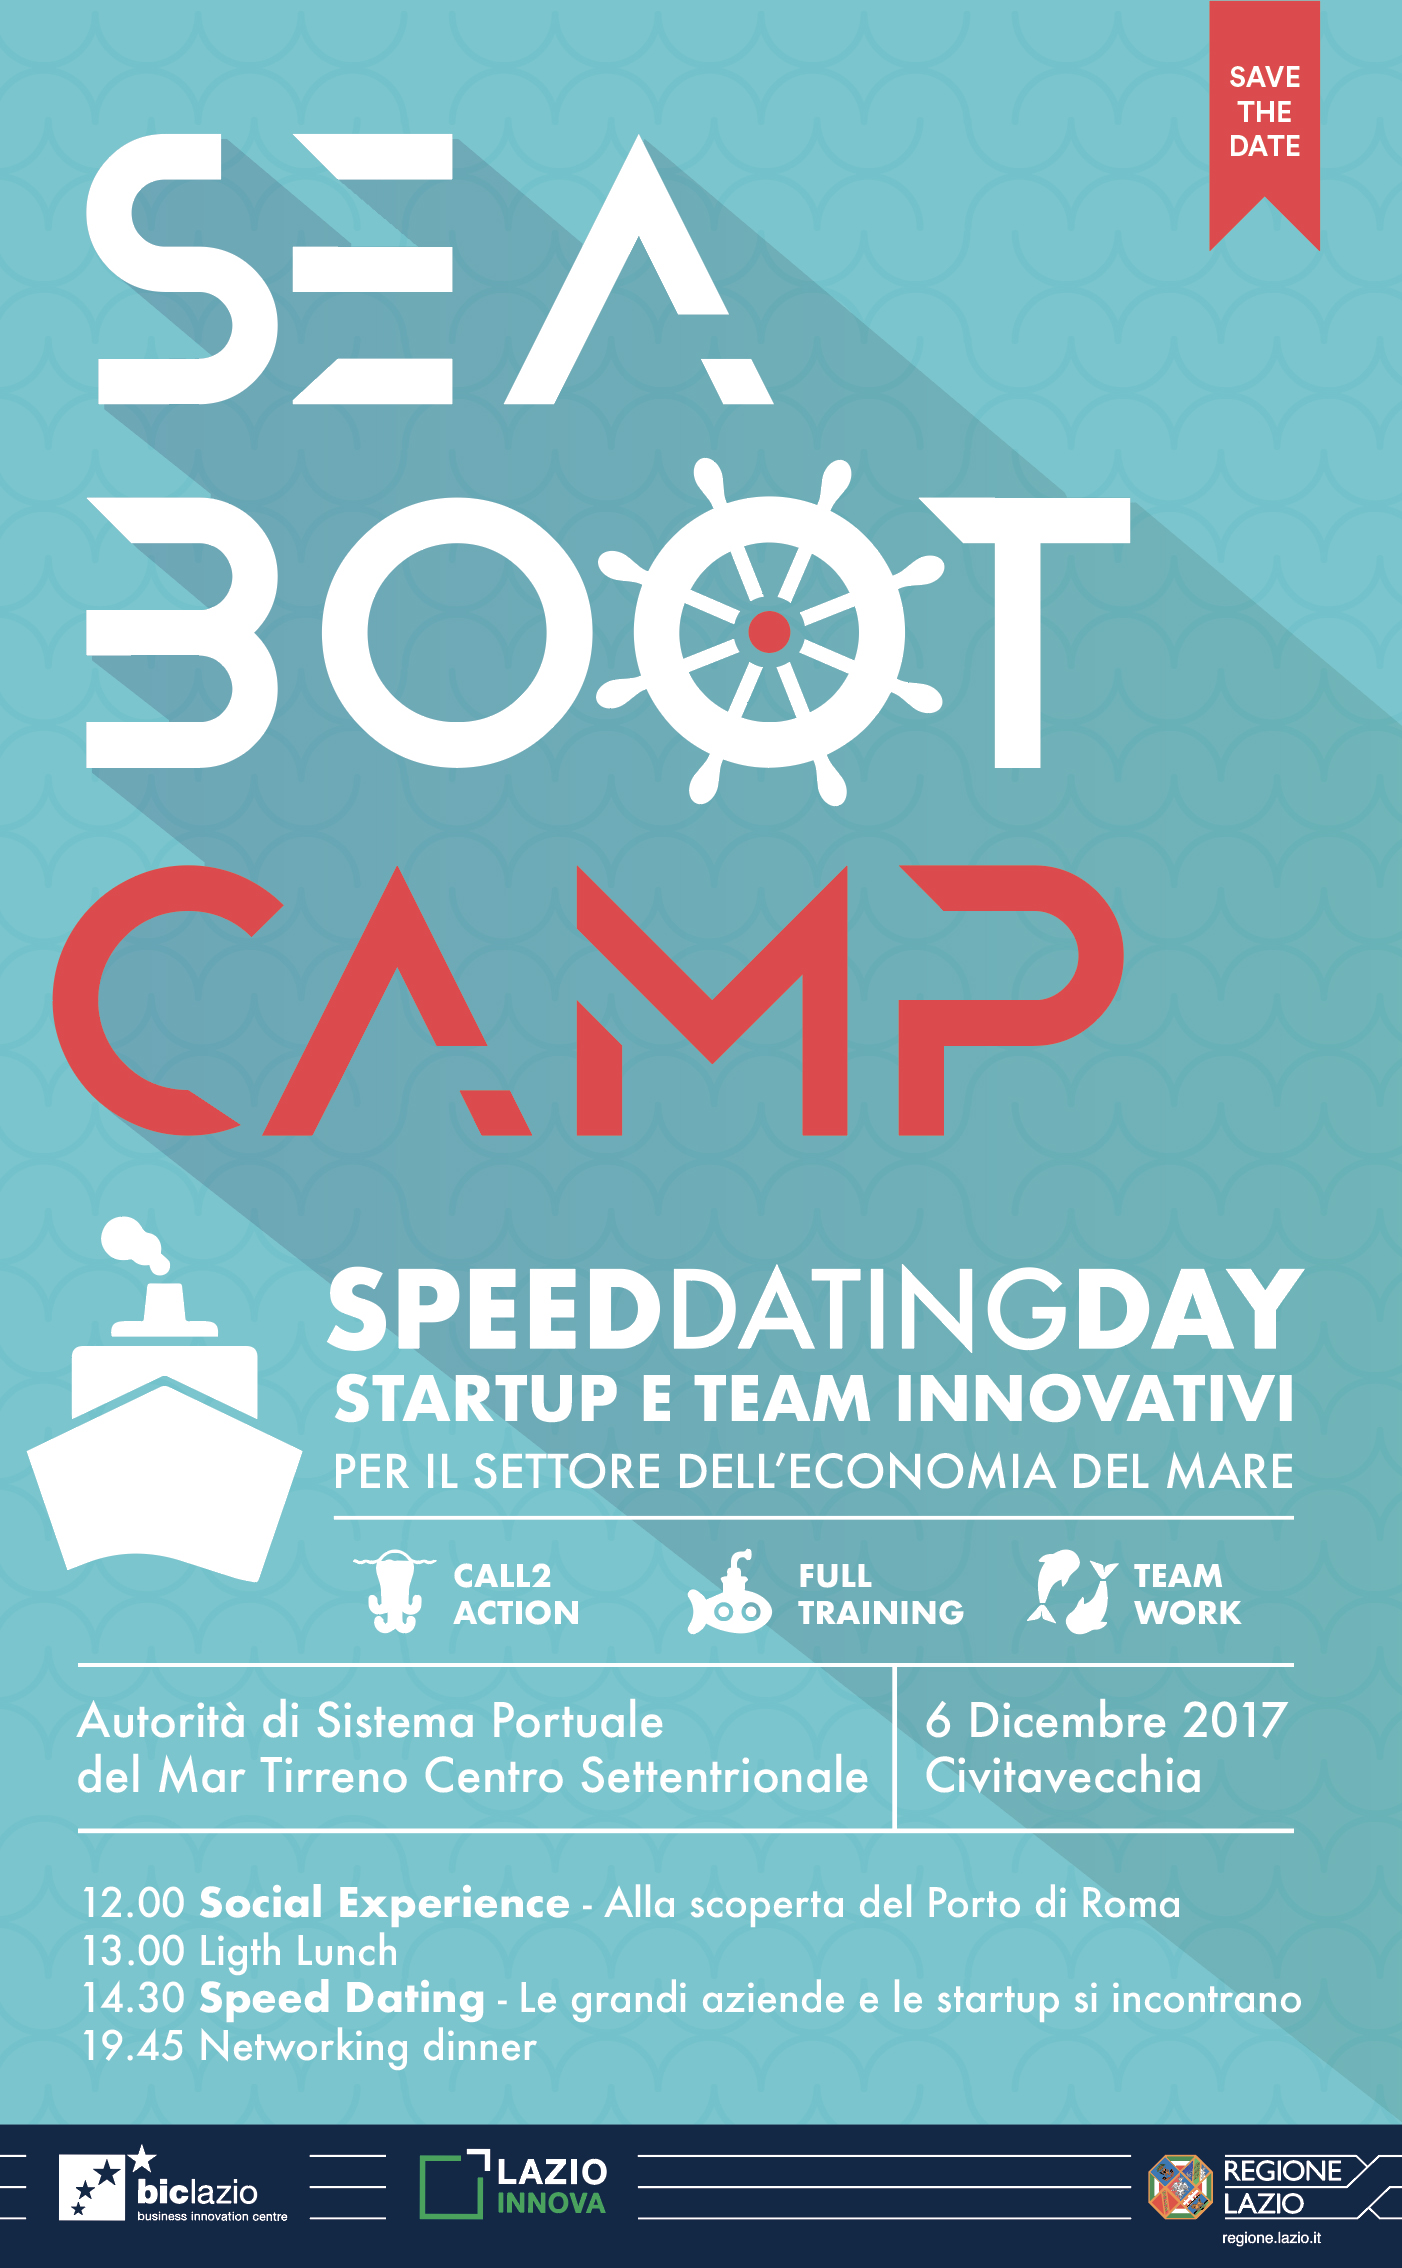 Il programma della fase finale del Sea Boat Camp 2017 che si svolgerà il 6 dicembre 2017 presso il Porto di Civitavecchia